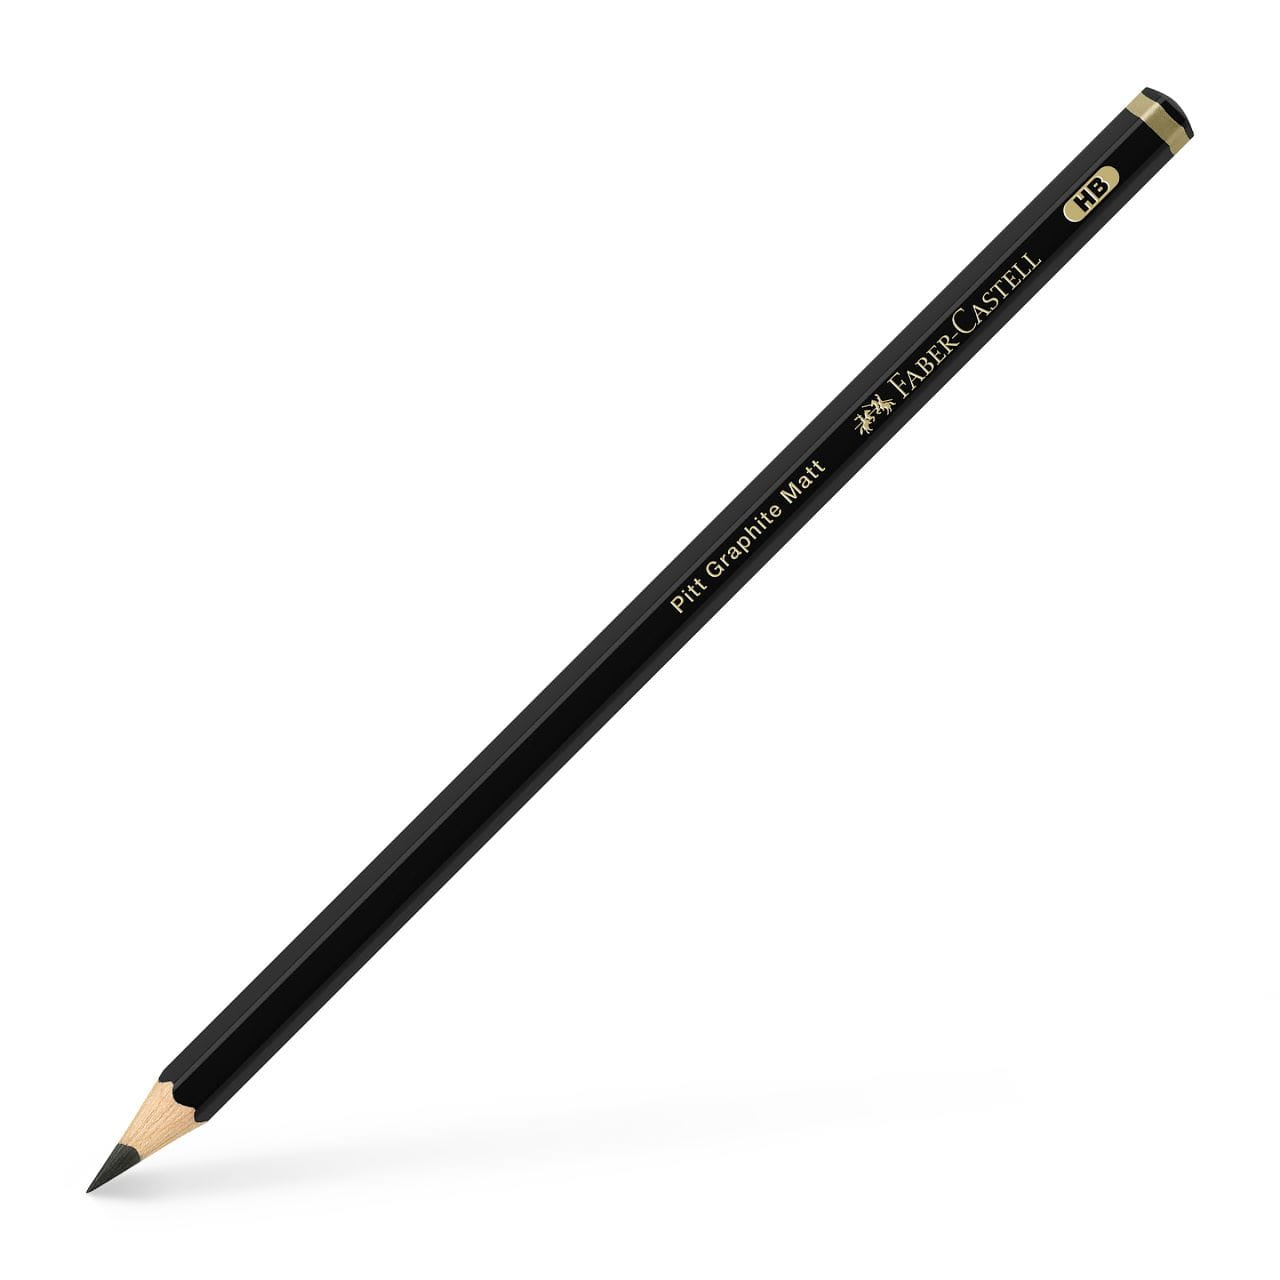 Faber-Castell - Pitt Graphite Matt pencil, HB